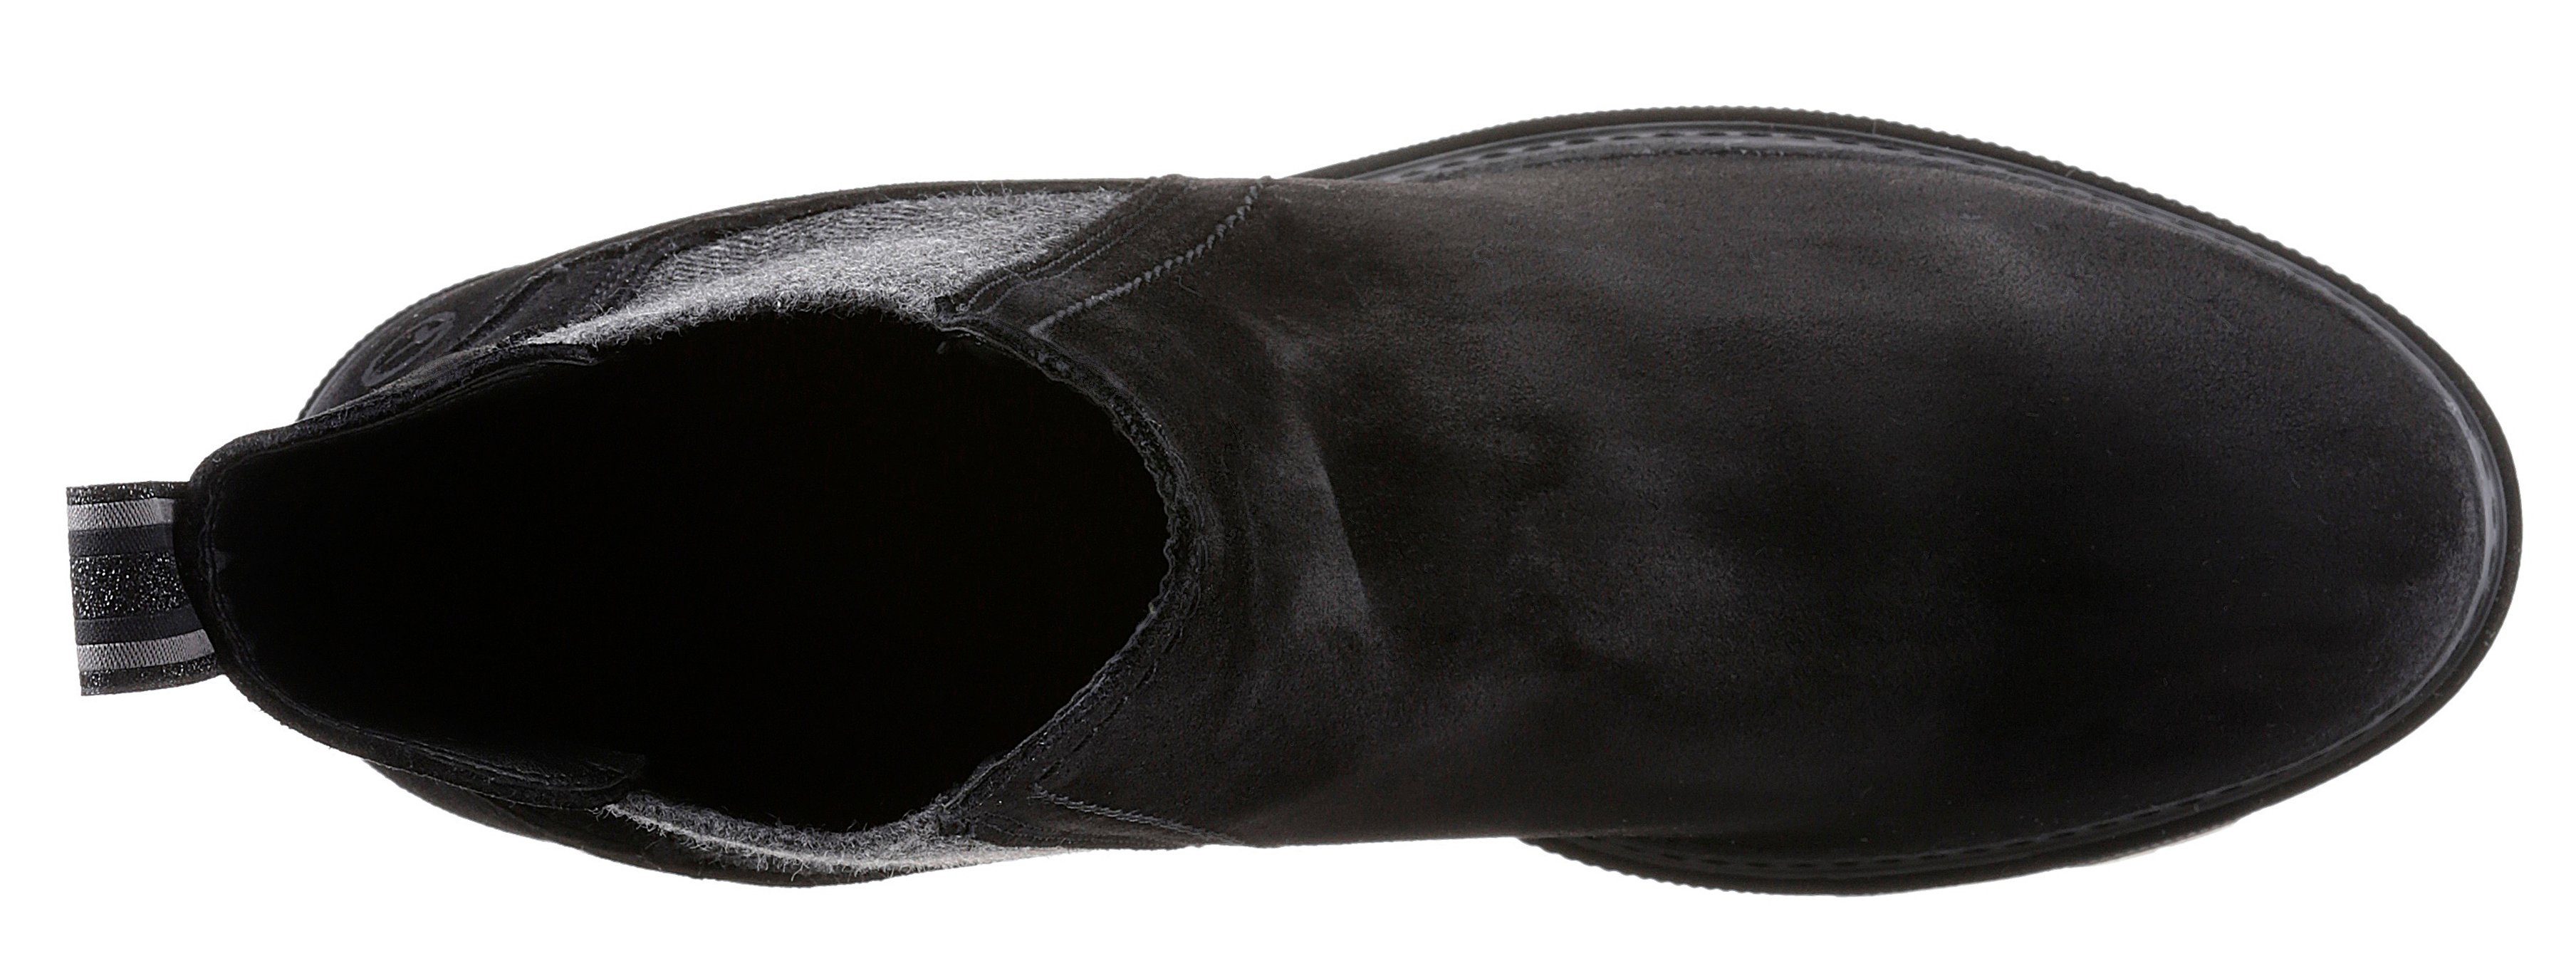 Stiefelette schwarz mit Streifenbesatz trendigen Tamaris Panna